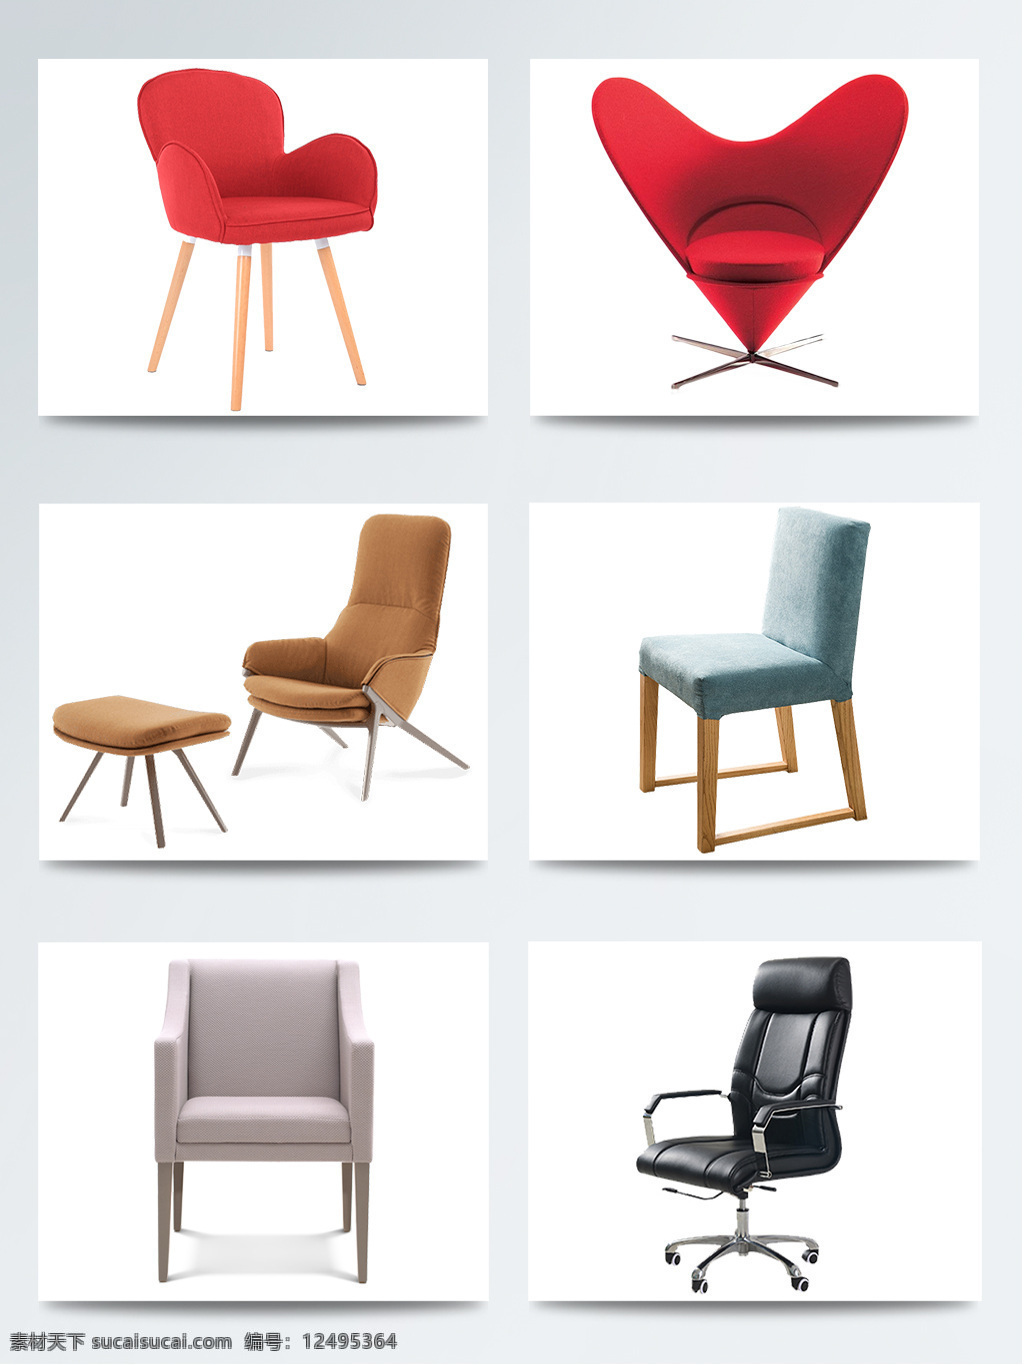 实物 椅子 老板 时尚 创意家居 产品设计 创意 凳子 家居 家装 家装节 简约沙发 生活椅子 新年惠 用品